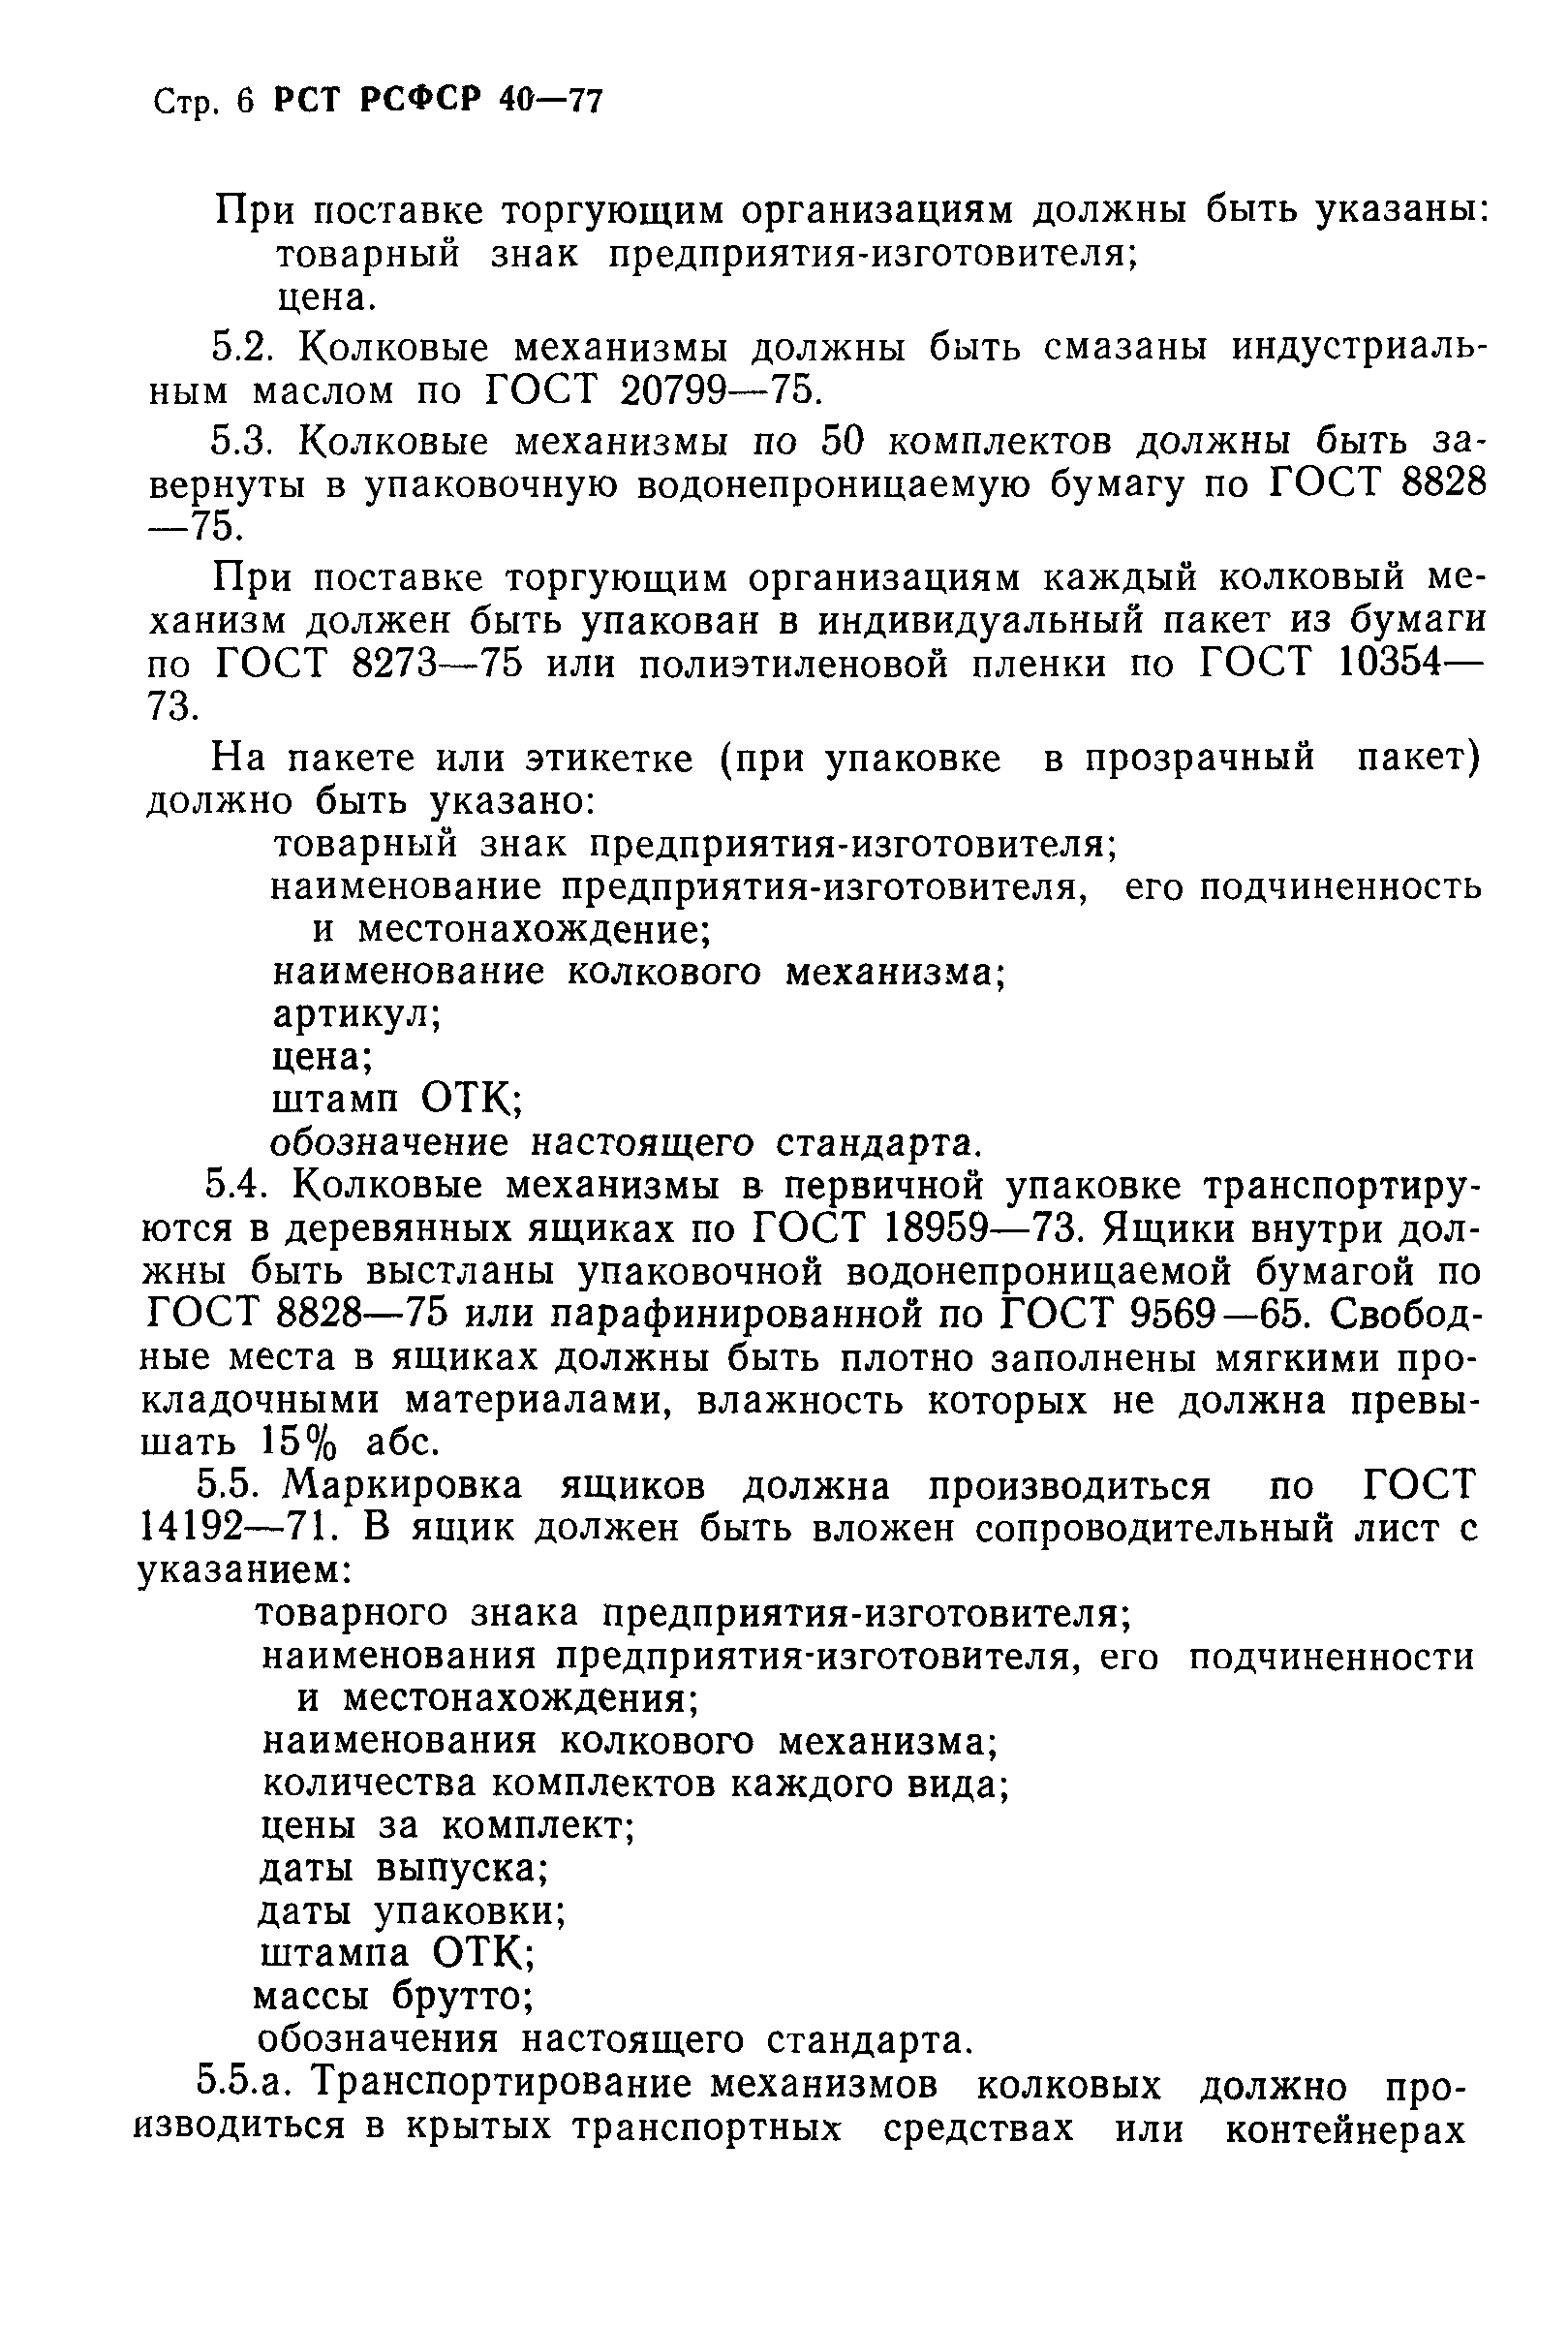 РСТ РСФСР 40-77